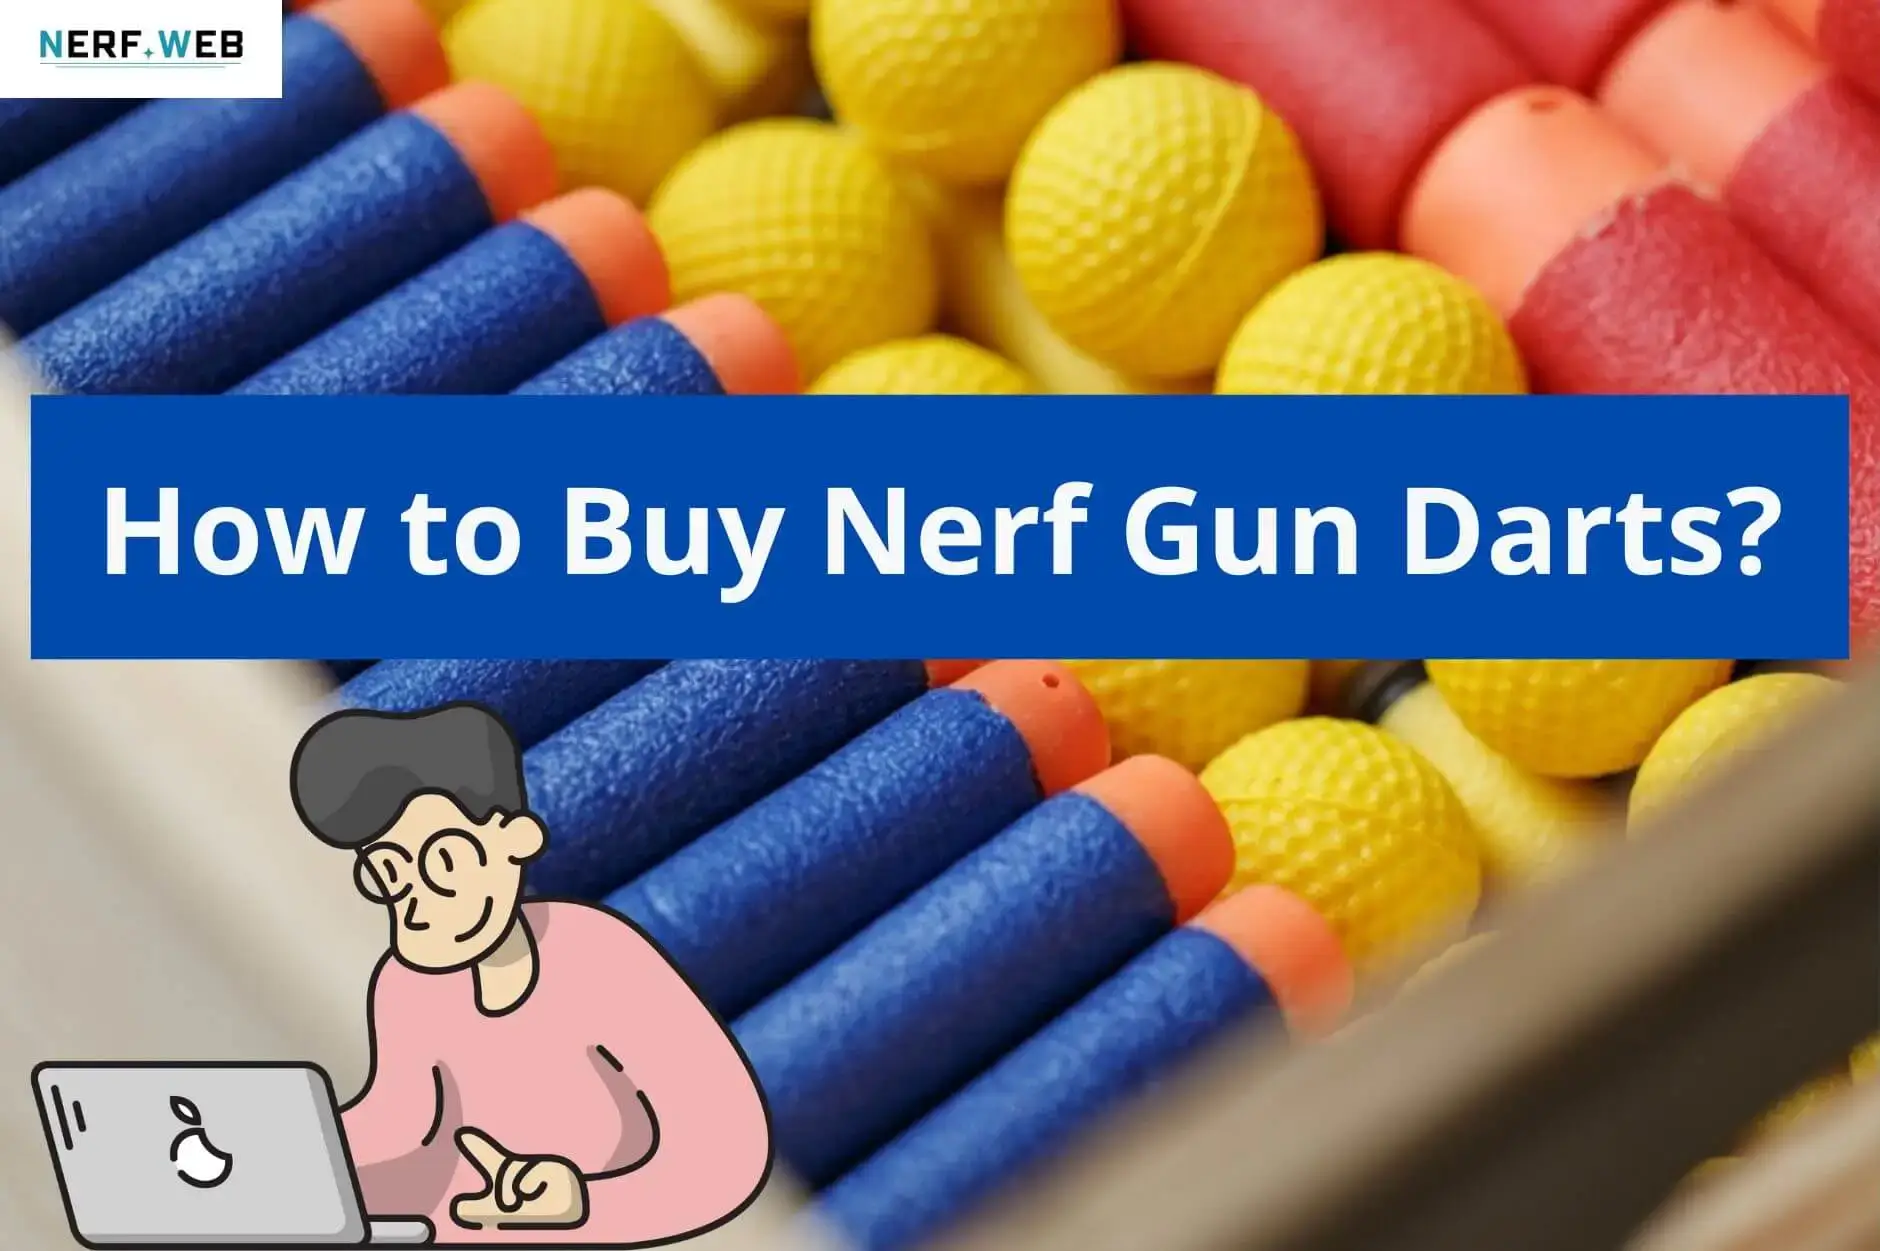 How to buy Nerf gun darts